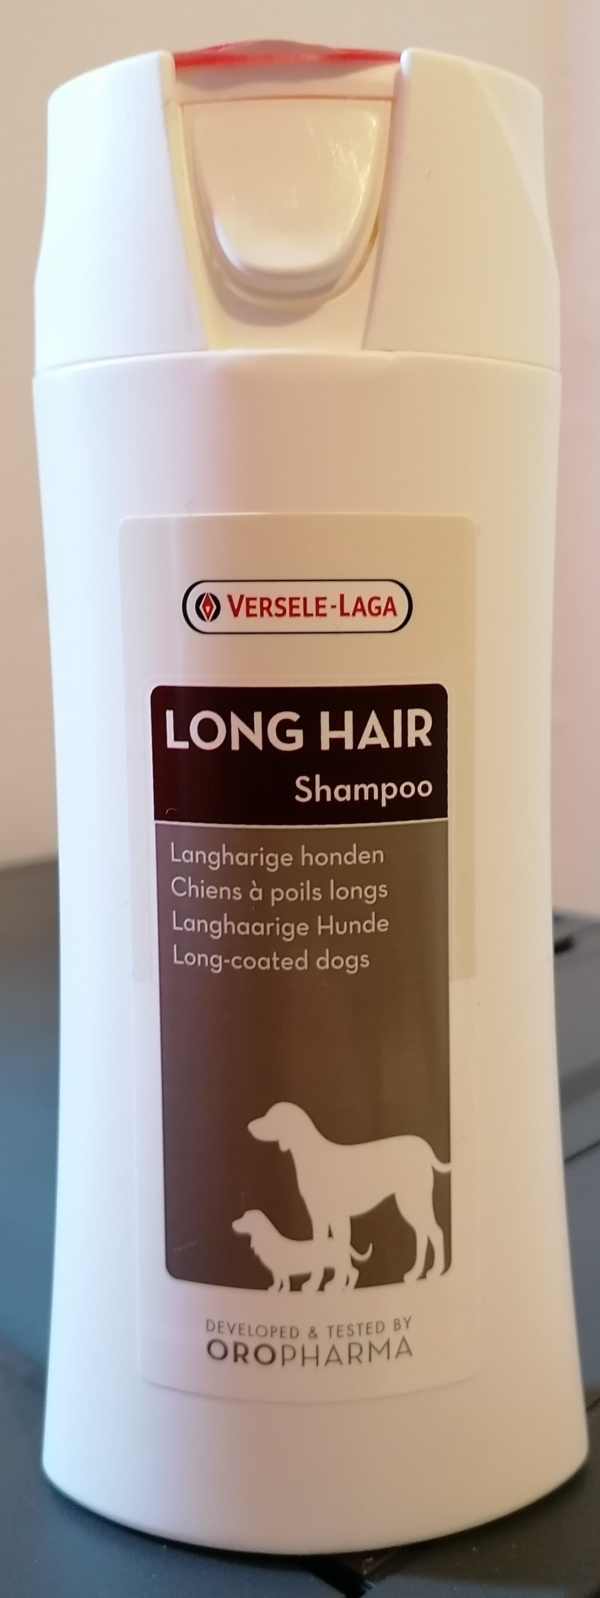 Oropharma Long hair shampoo